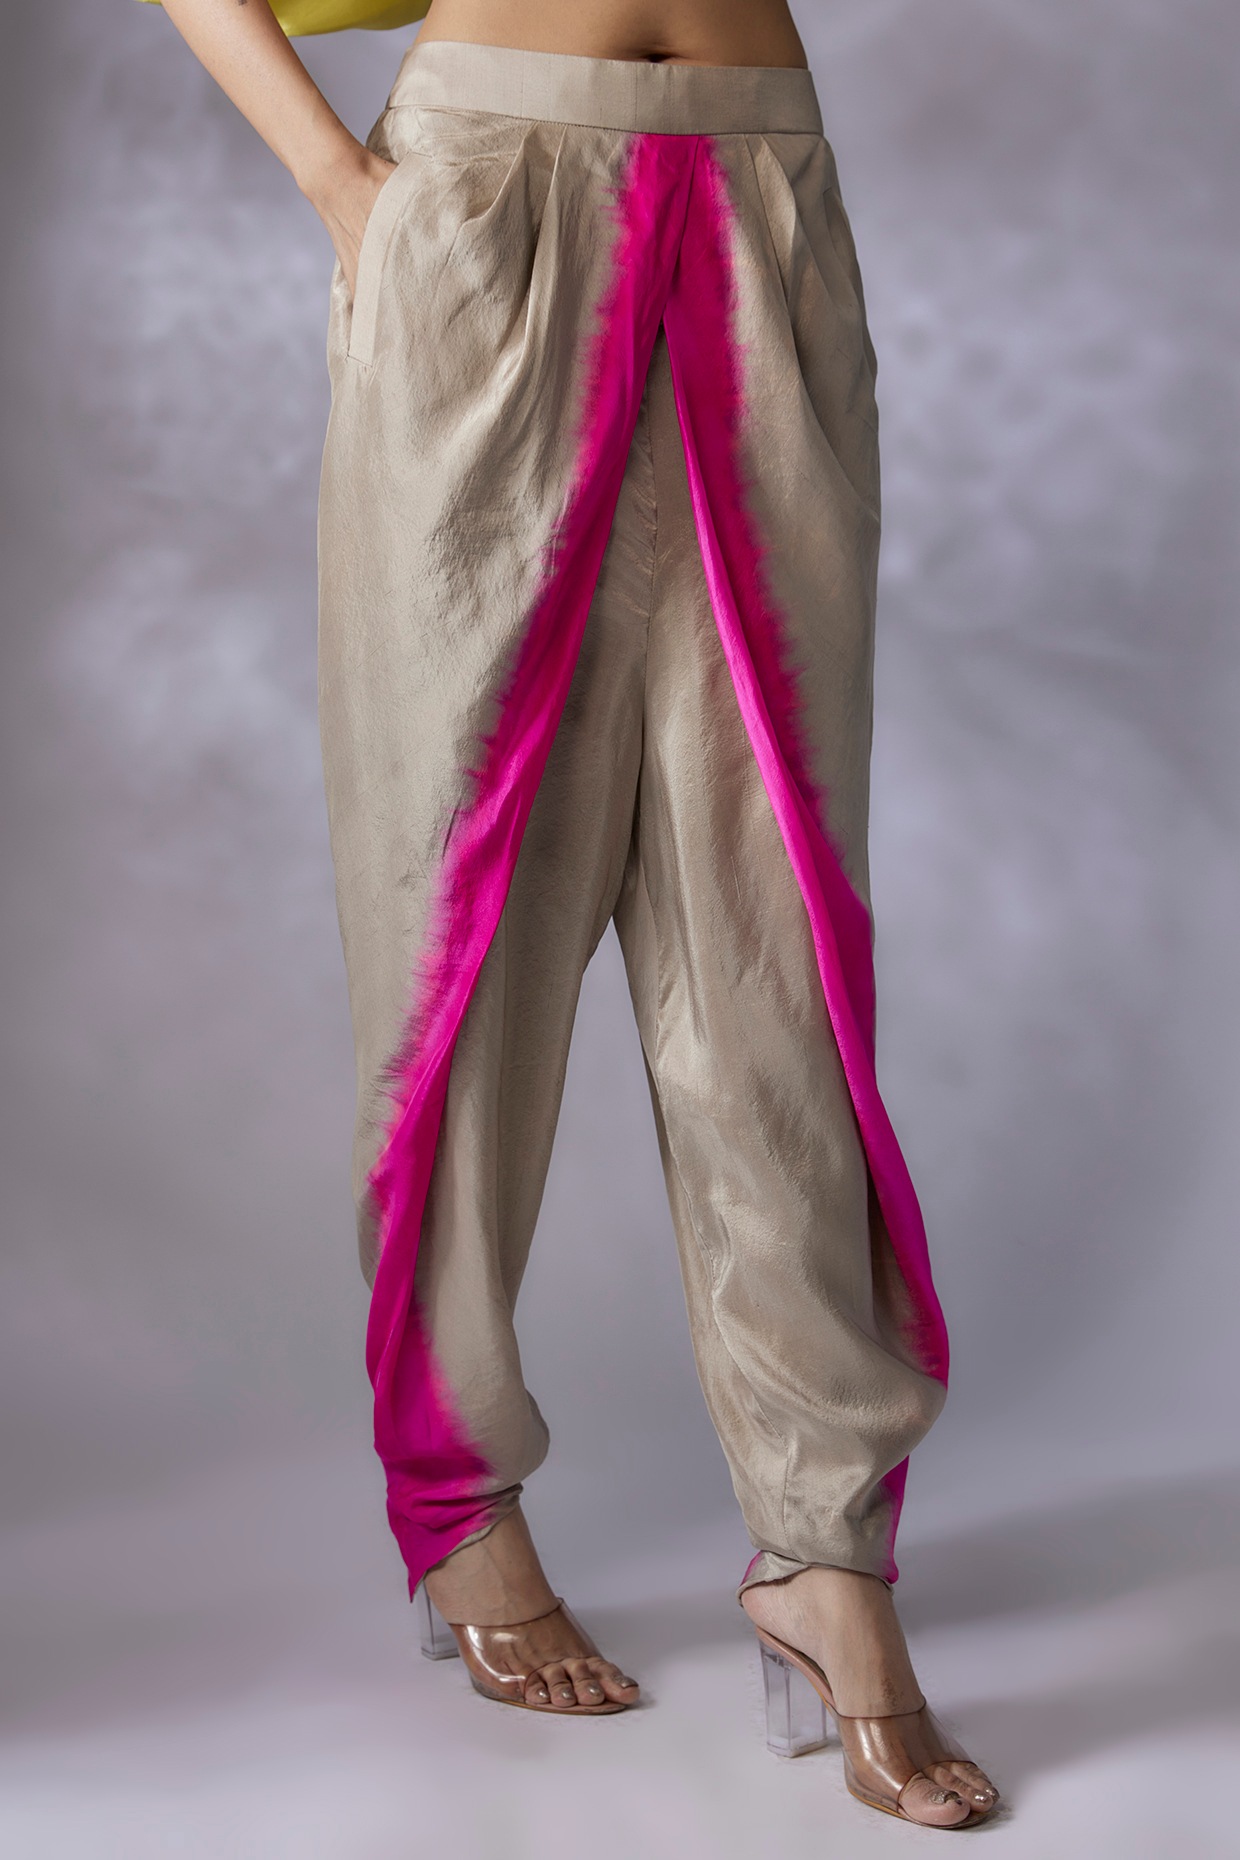 Cotonie Women Plus Size Boho Harem Pants Loose Yoga Pants Hippie Elastic  Waist Wide Leg Solid Color Casual Dance Baggy Long Pants Workout Joggers -  Walmart.com